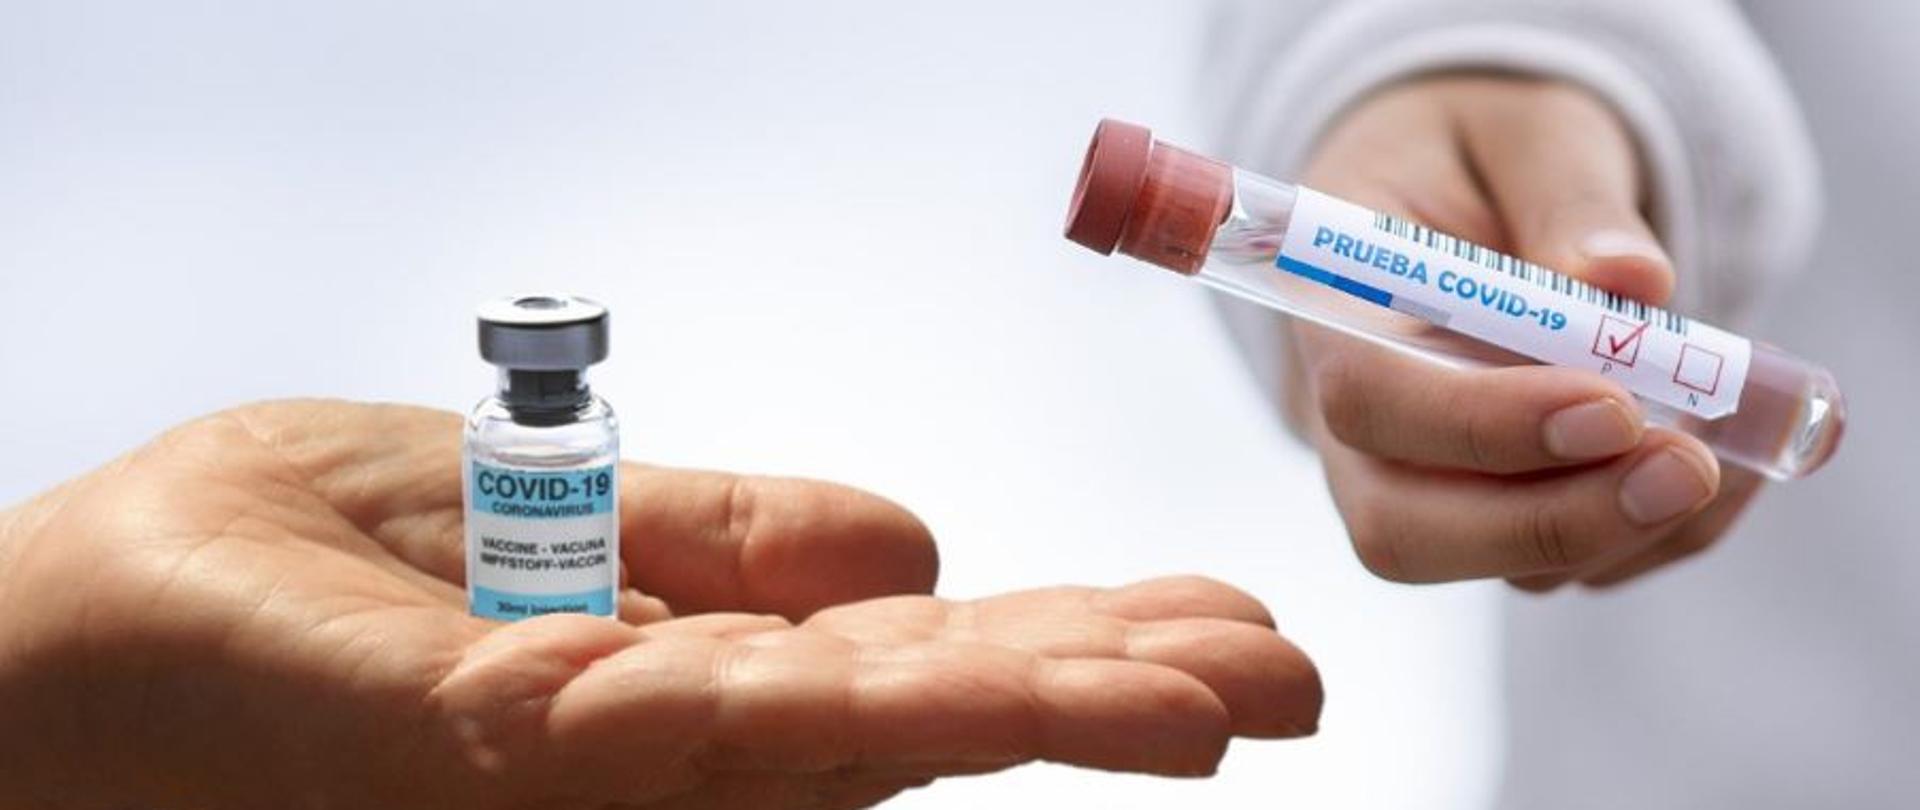 białe tło, na otwartej doni fiolka szczepionki przeciw COVID-19, obok w ręce szklana fiolka z niebieskim napisem PRUEBA COVID - 19